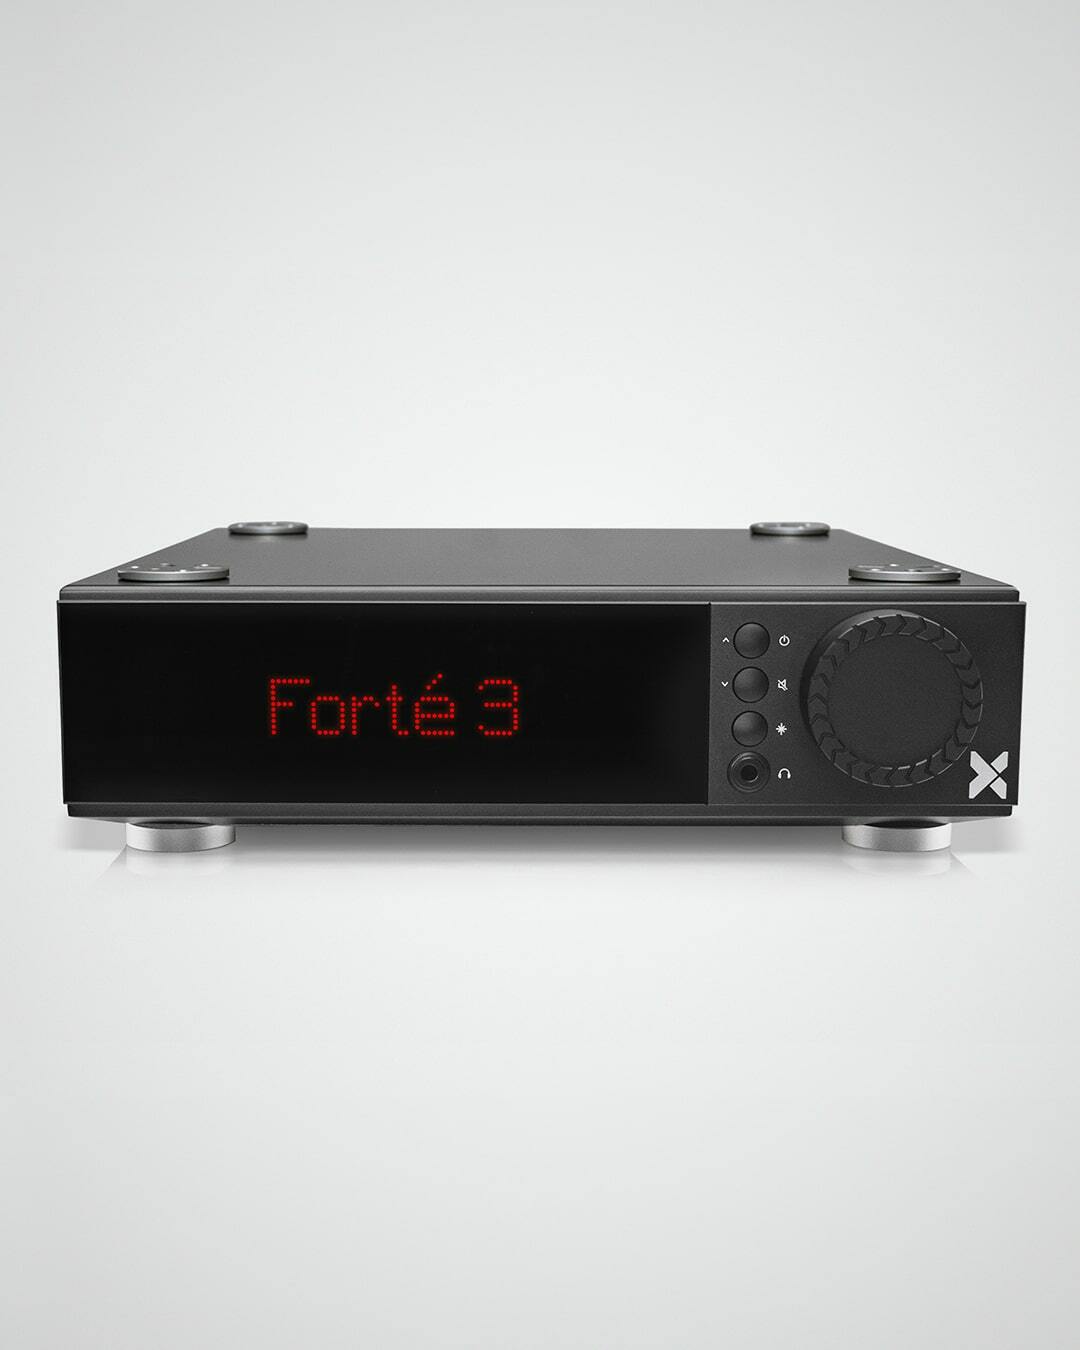 Интегрированный усилитель Axxess Forte 3